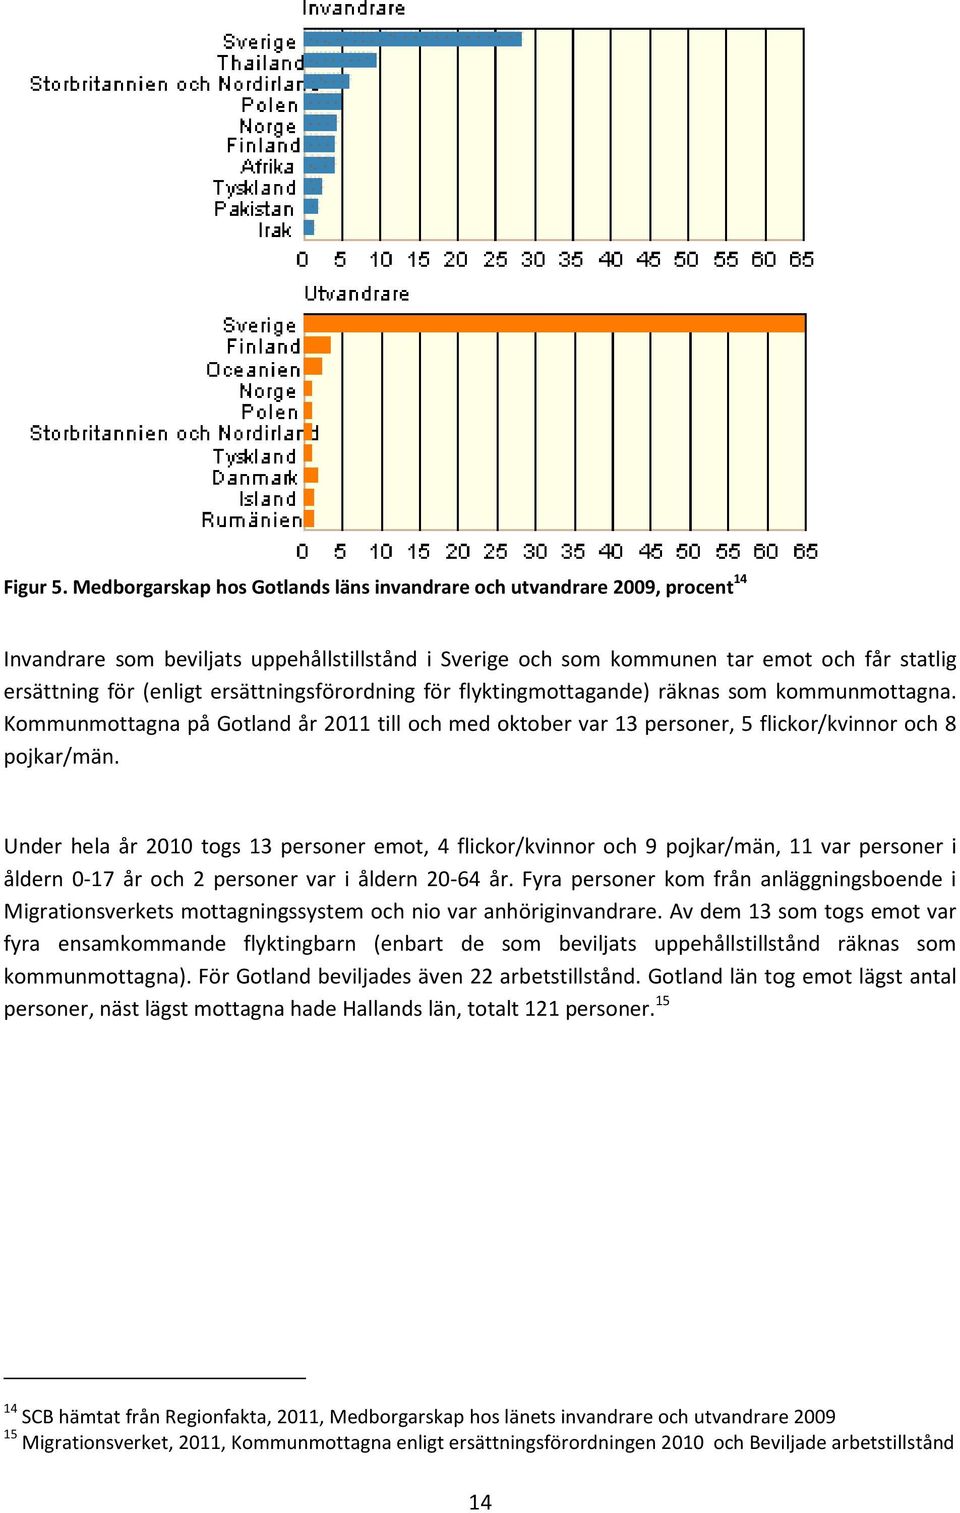 ersättningsförordning för flyktingmottagande) räknas som kommunmottagna. Kommunmottagna på Gotland år 2011 till och med oktober var 13 personer, 5 flickor/kvinnor och 8 pojkar/män.